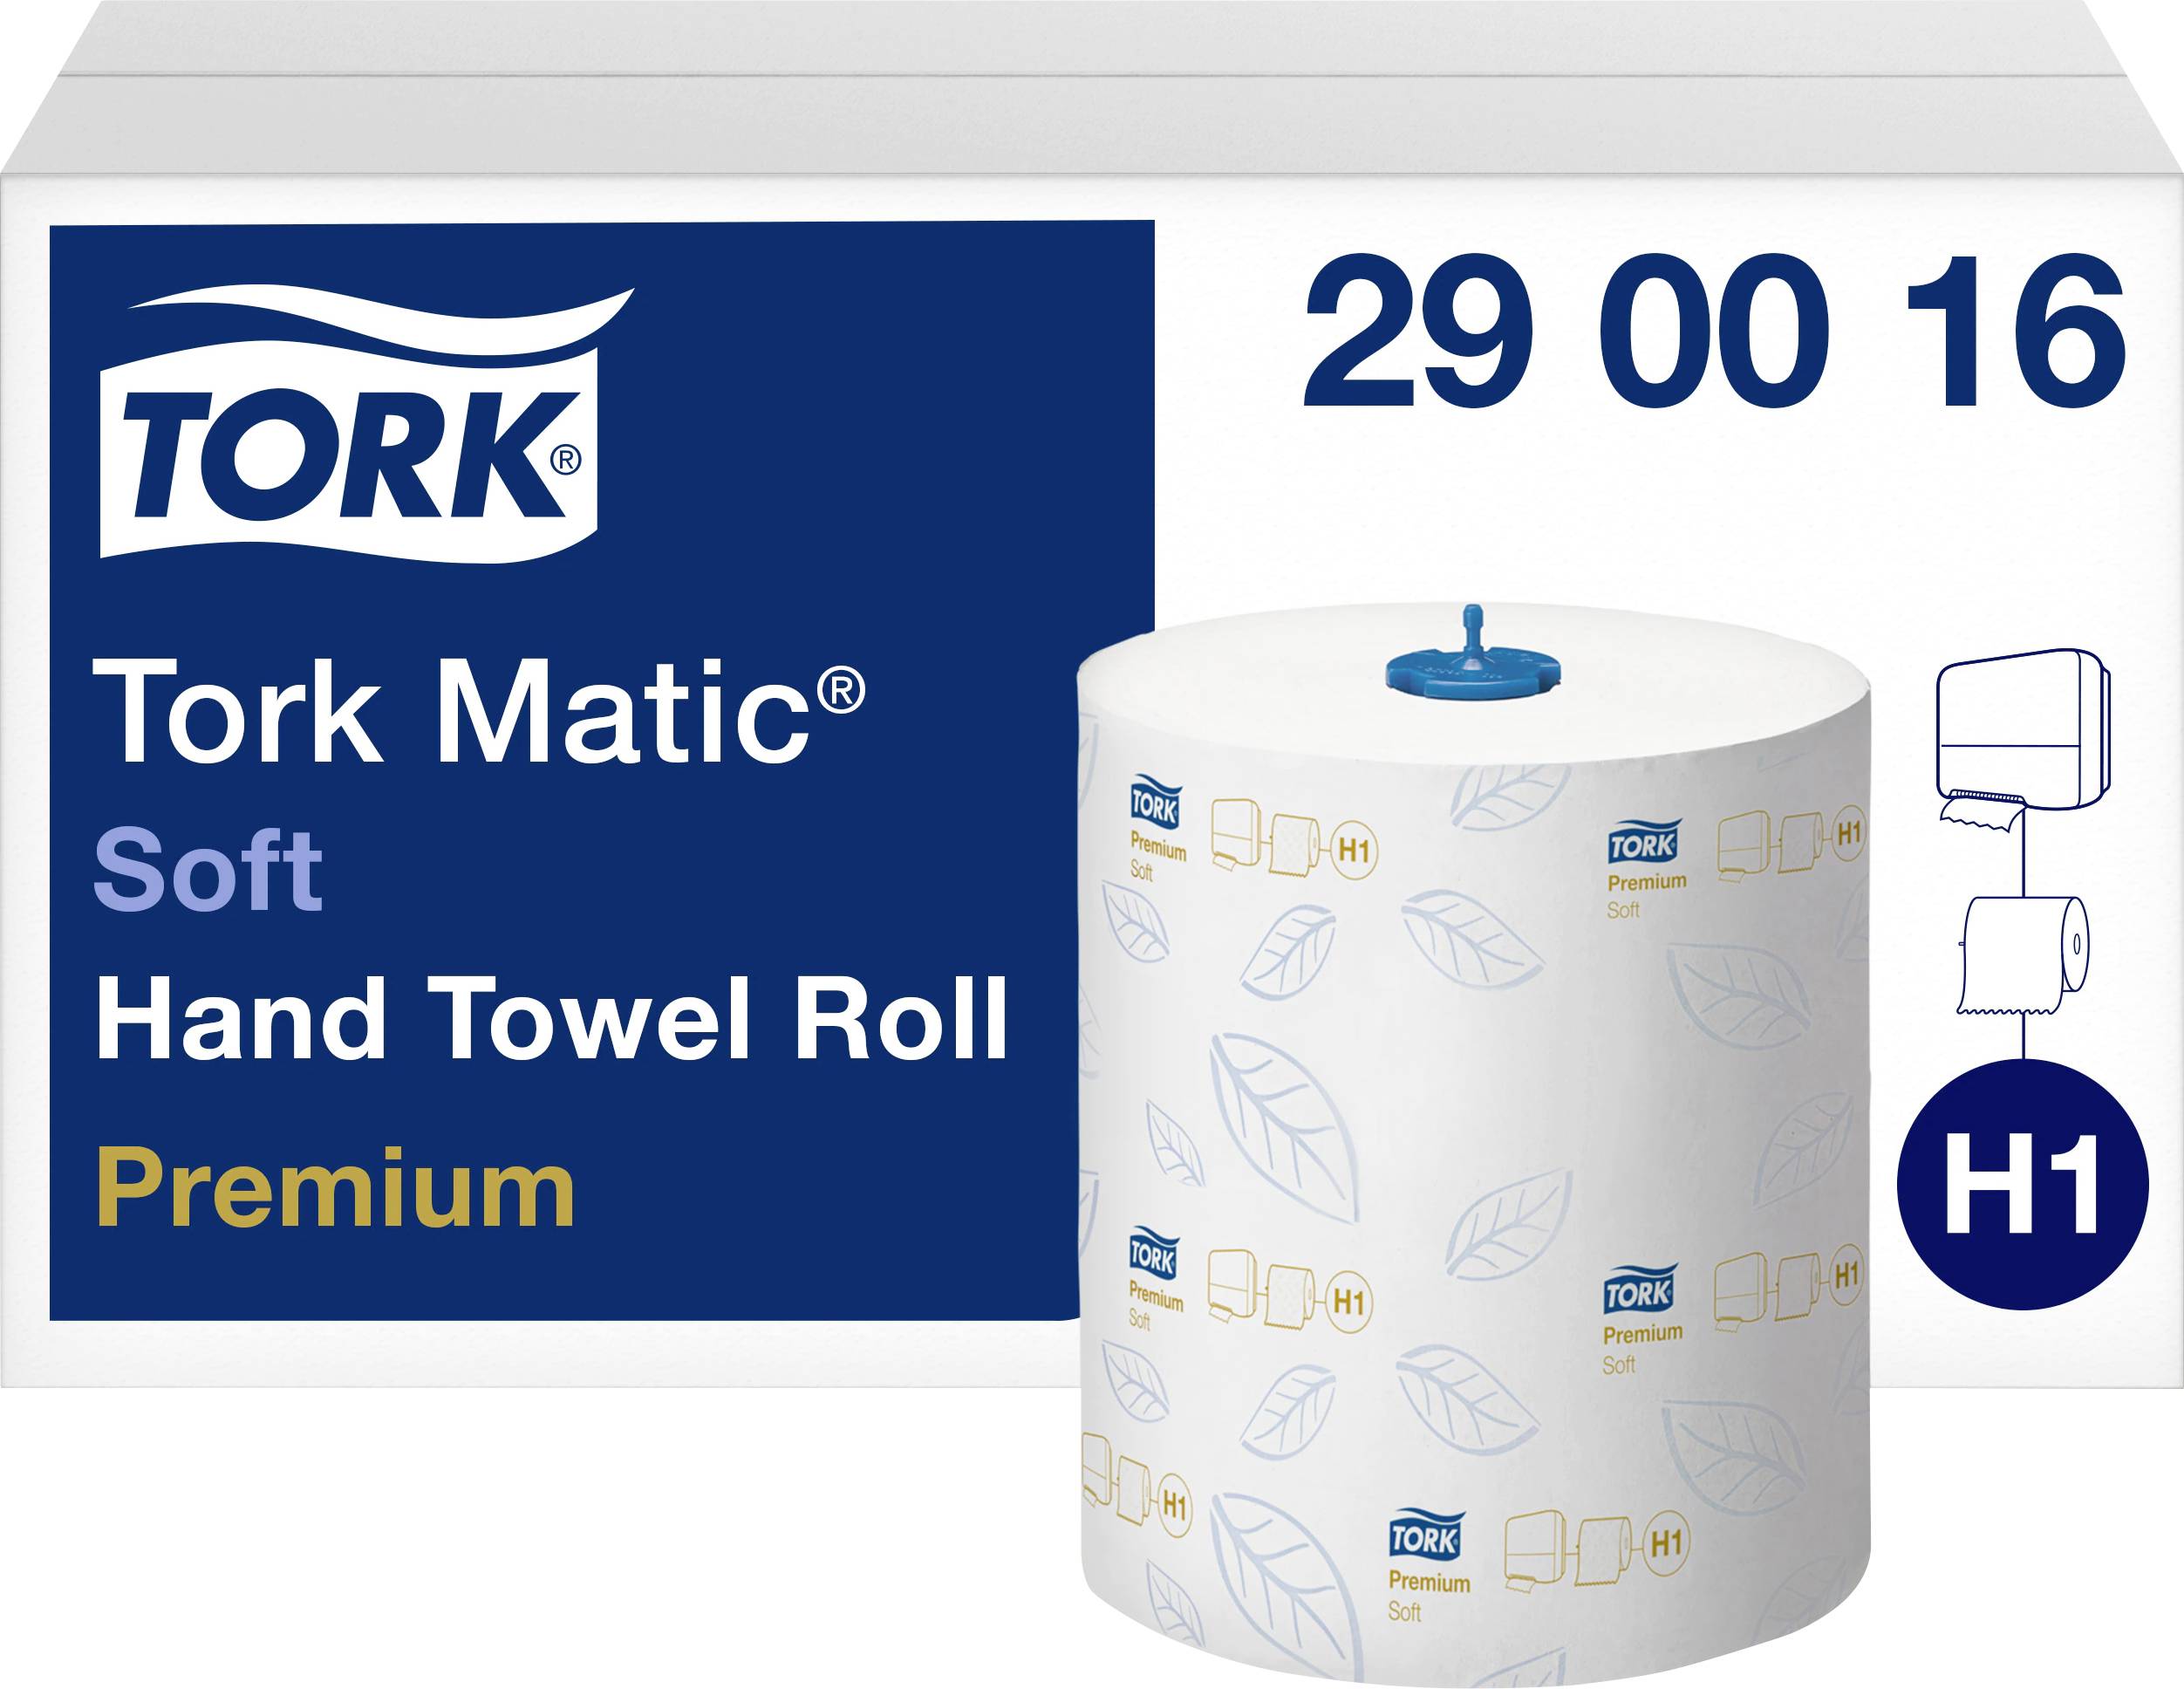 Полотенца бумажные Tork matic Premium 290016. Бумажные полотенца торк h1. Полотенца бумажные Pingo (белые), 2-сл рулон. Tork 110225. Полотенце h1